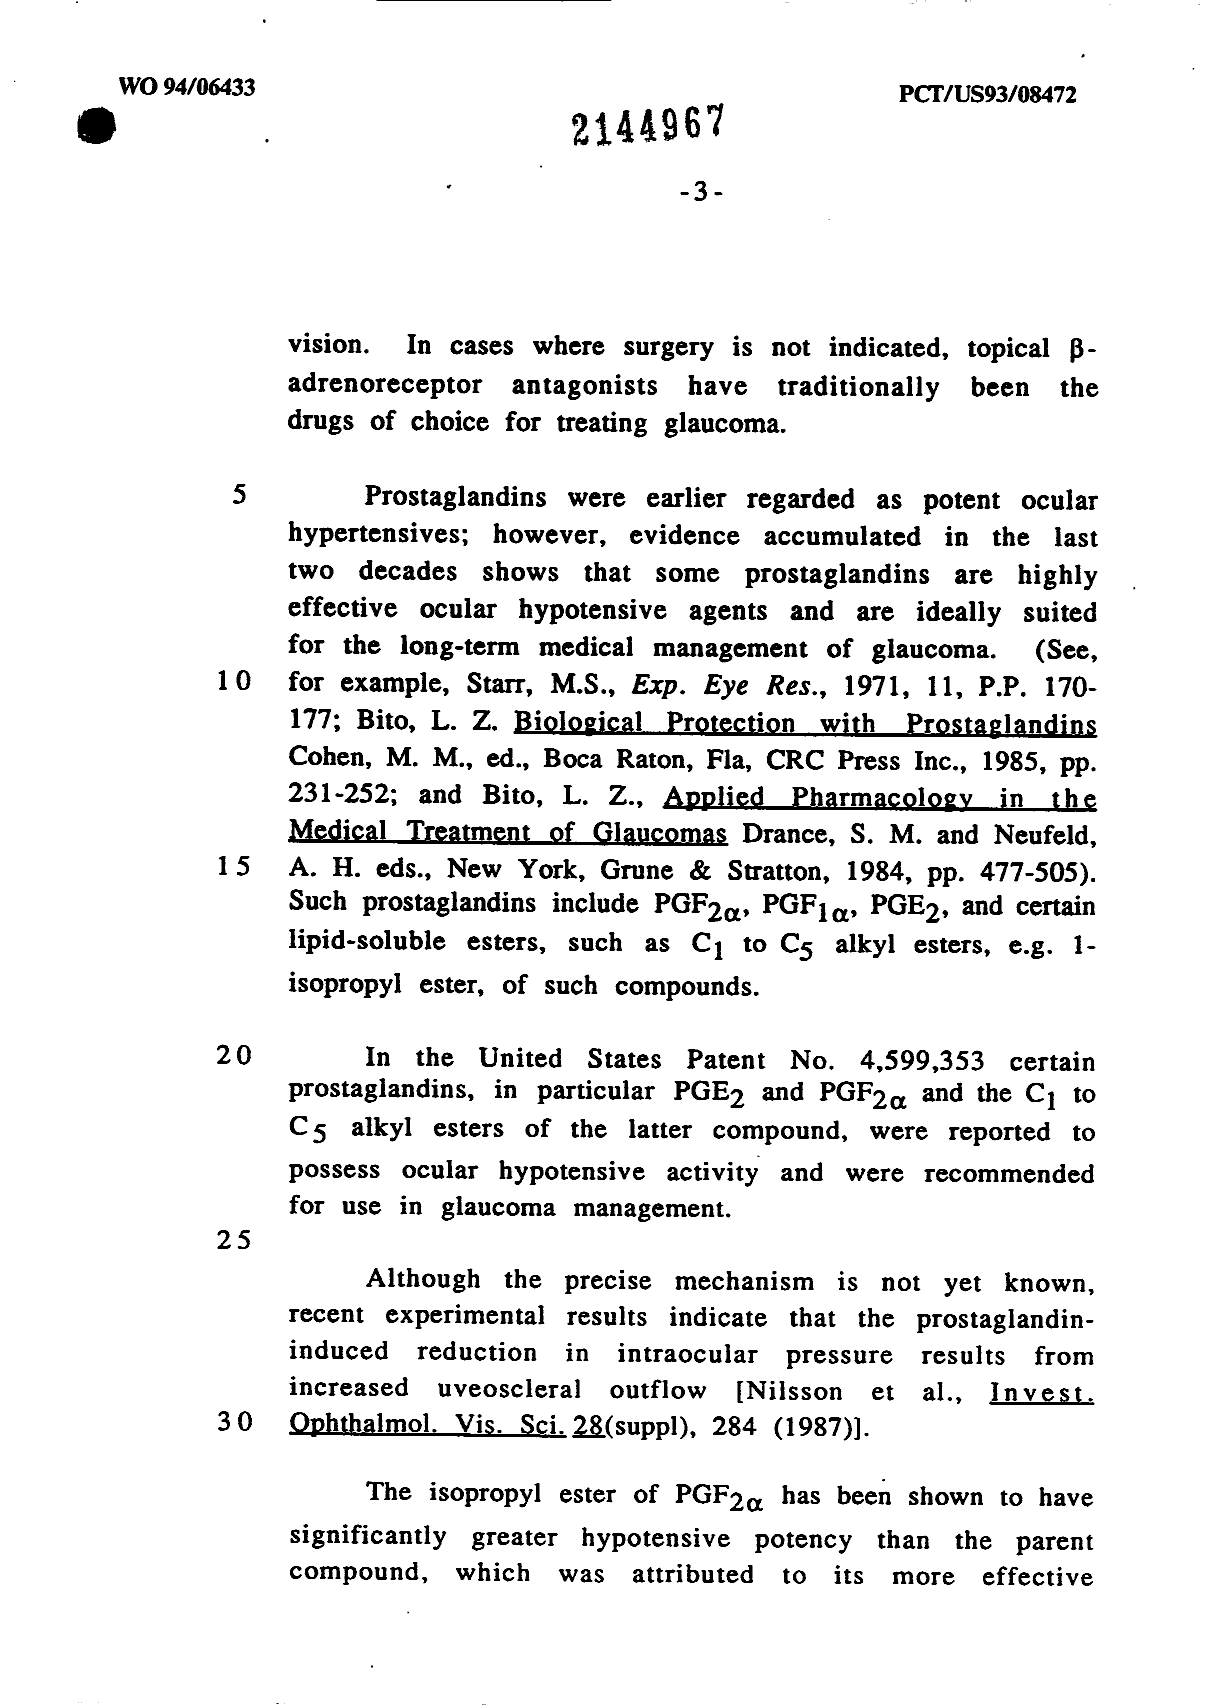 Canadian Patent Document 2144967. Description 19931231. Image 3 of 54